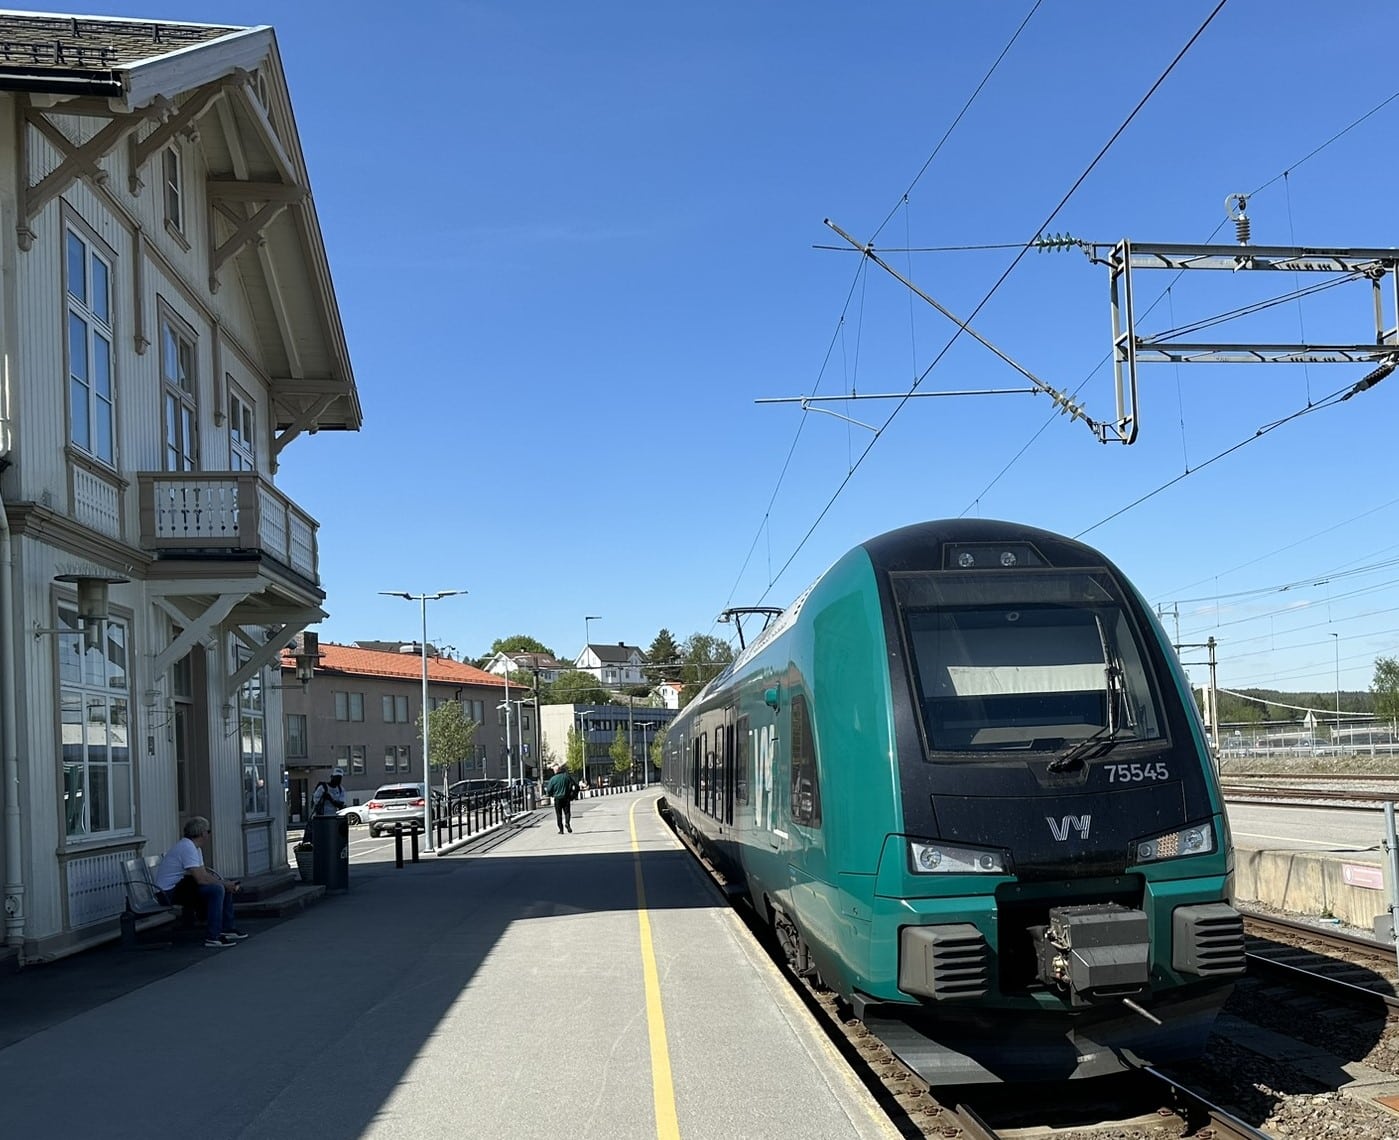 Kongsvinger endestasjon for R14 med avganger hver time, i tillegg kommer fjerntogene til Sverige og en omfattende godstrafikk.